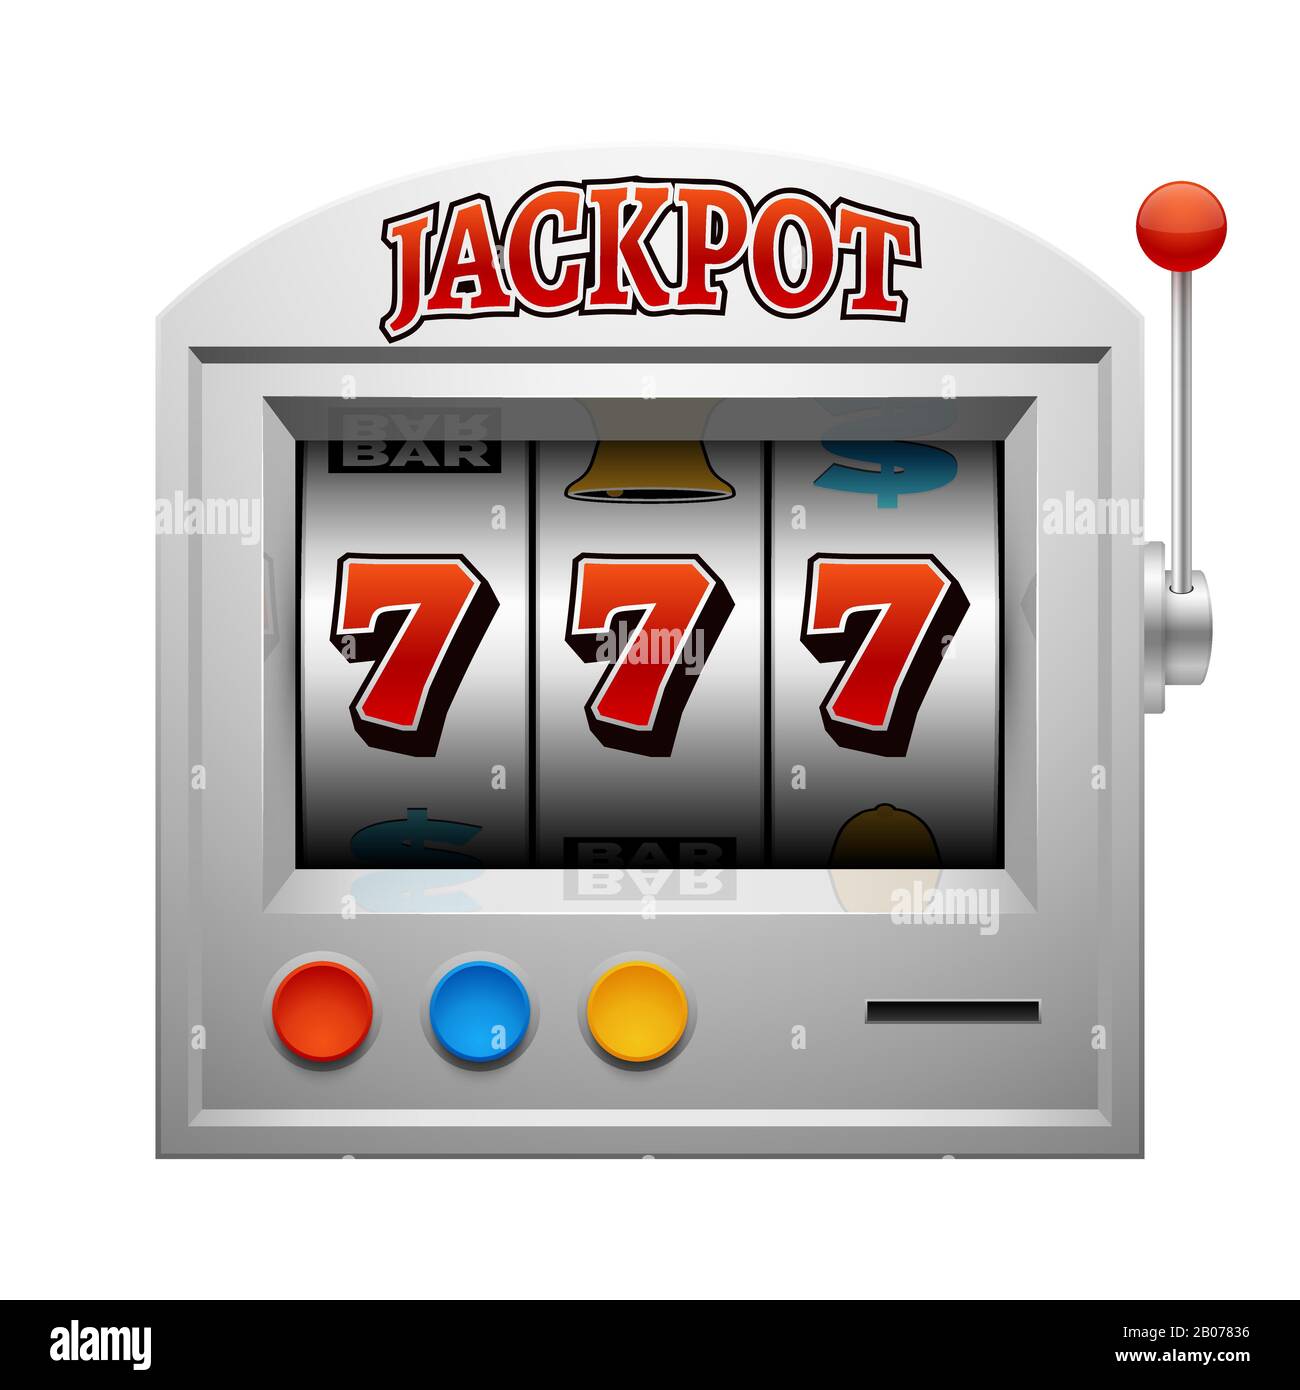 Casino slot jeu machine vecteur chance et le concept de gain. Jackpot dans l'illustration du jeu de pari Illustration de Vecteur